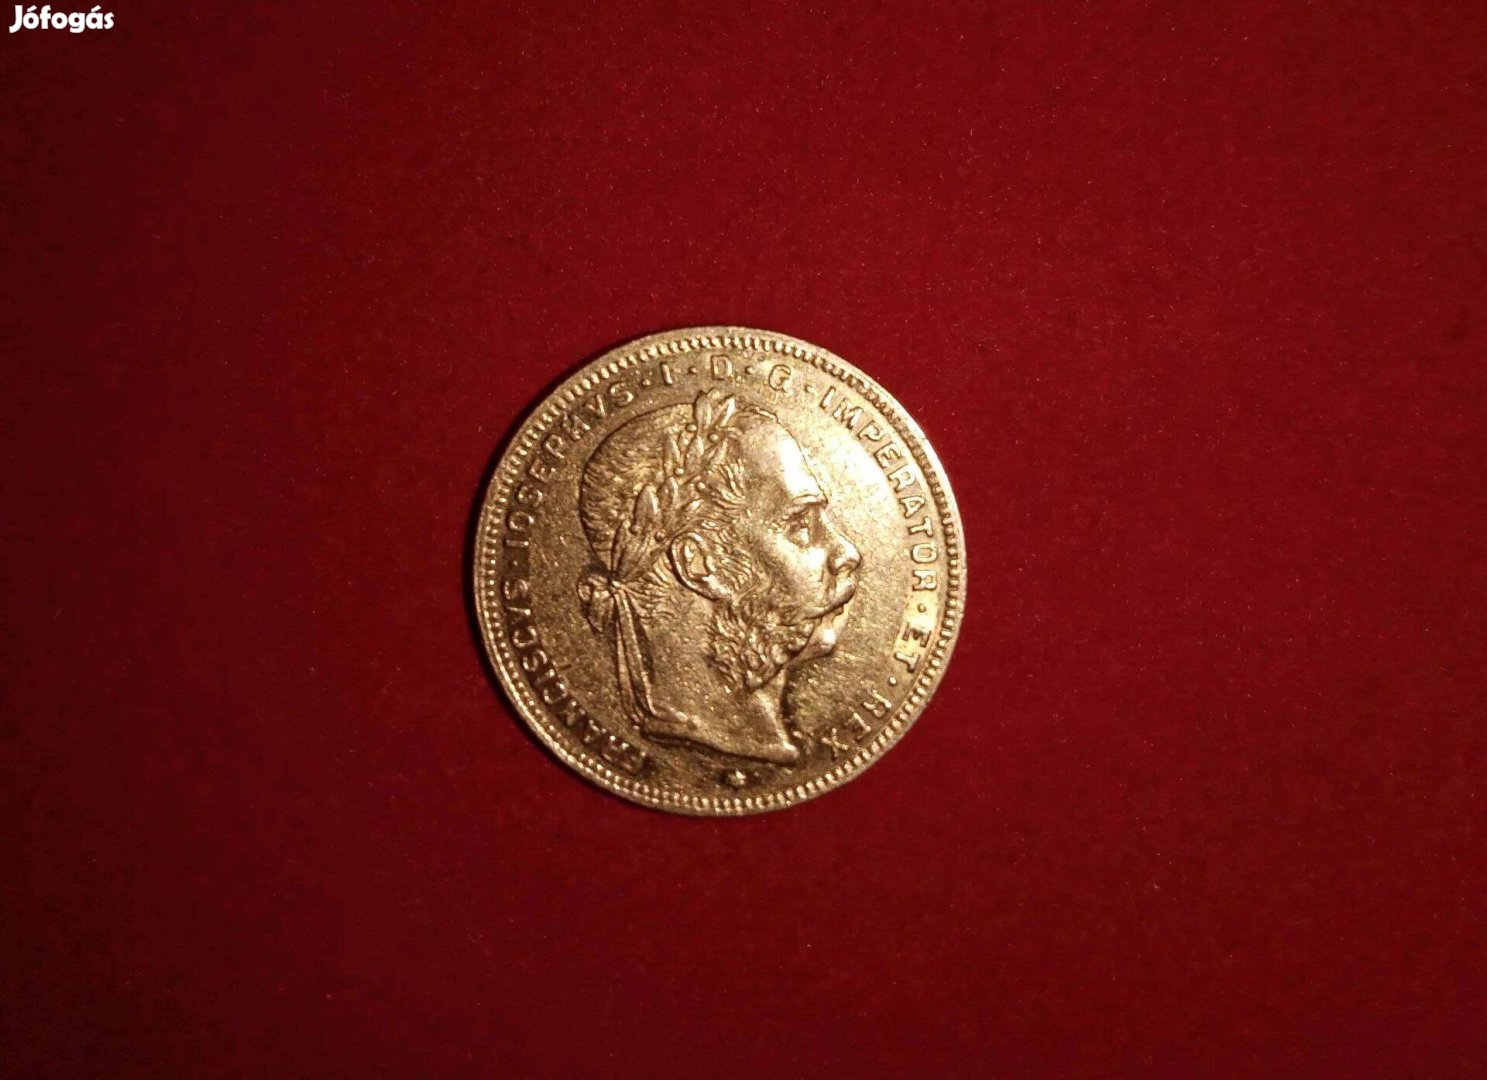 Ausztria arany 8 Florin 1887 - 6,43g - certifikációval